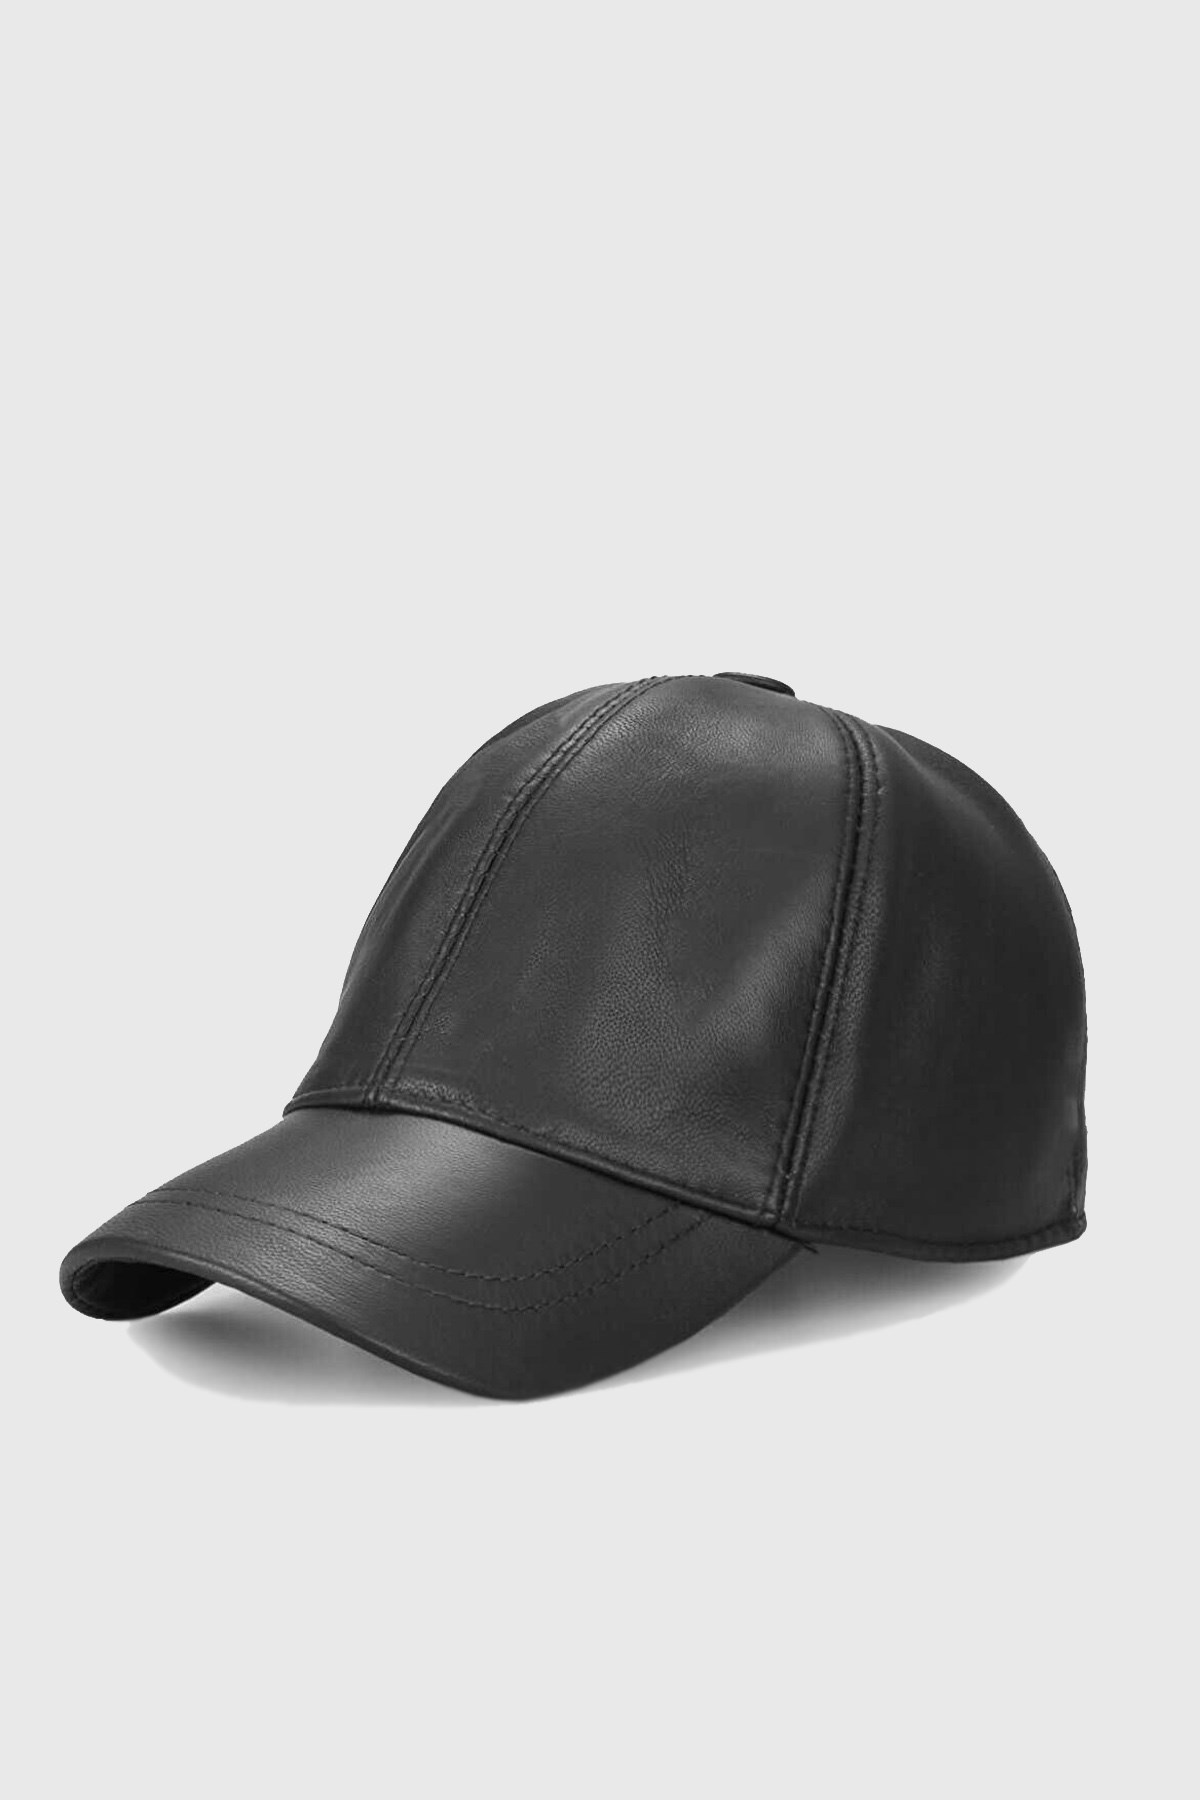 Külah Kadın Gerçek Deri Siyah Şapka KLH6864